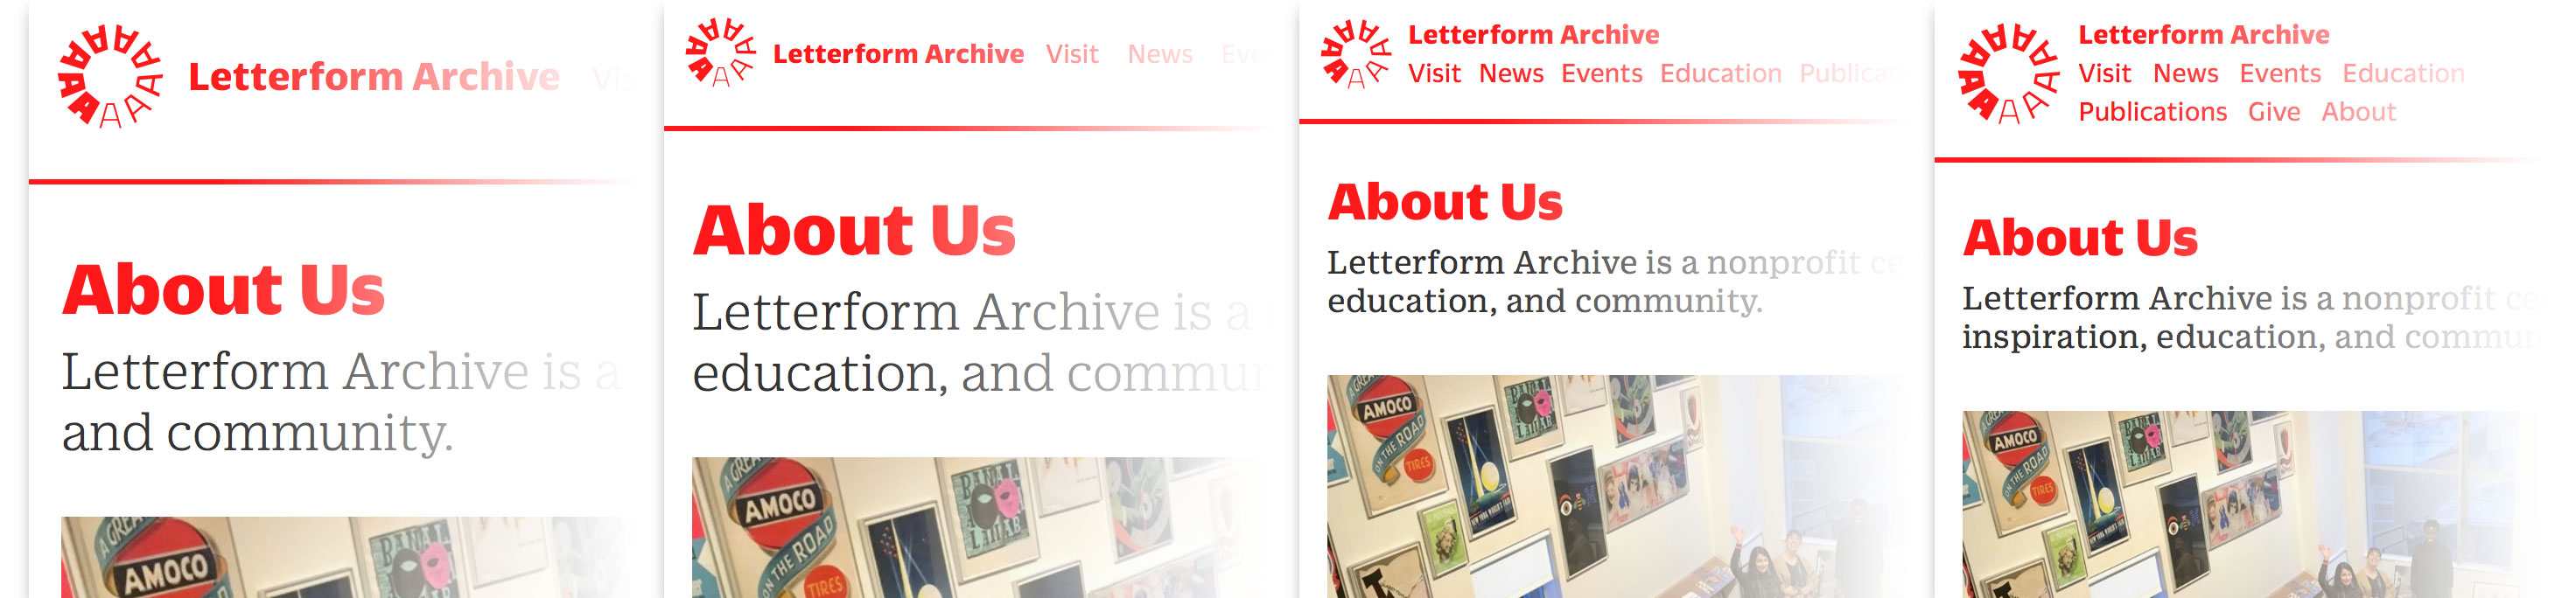 Responsive nav of Letterform Archive website